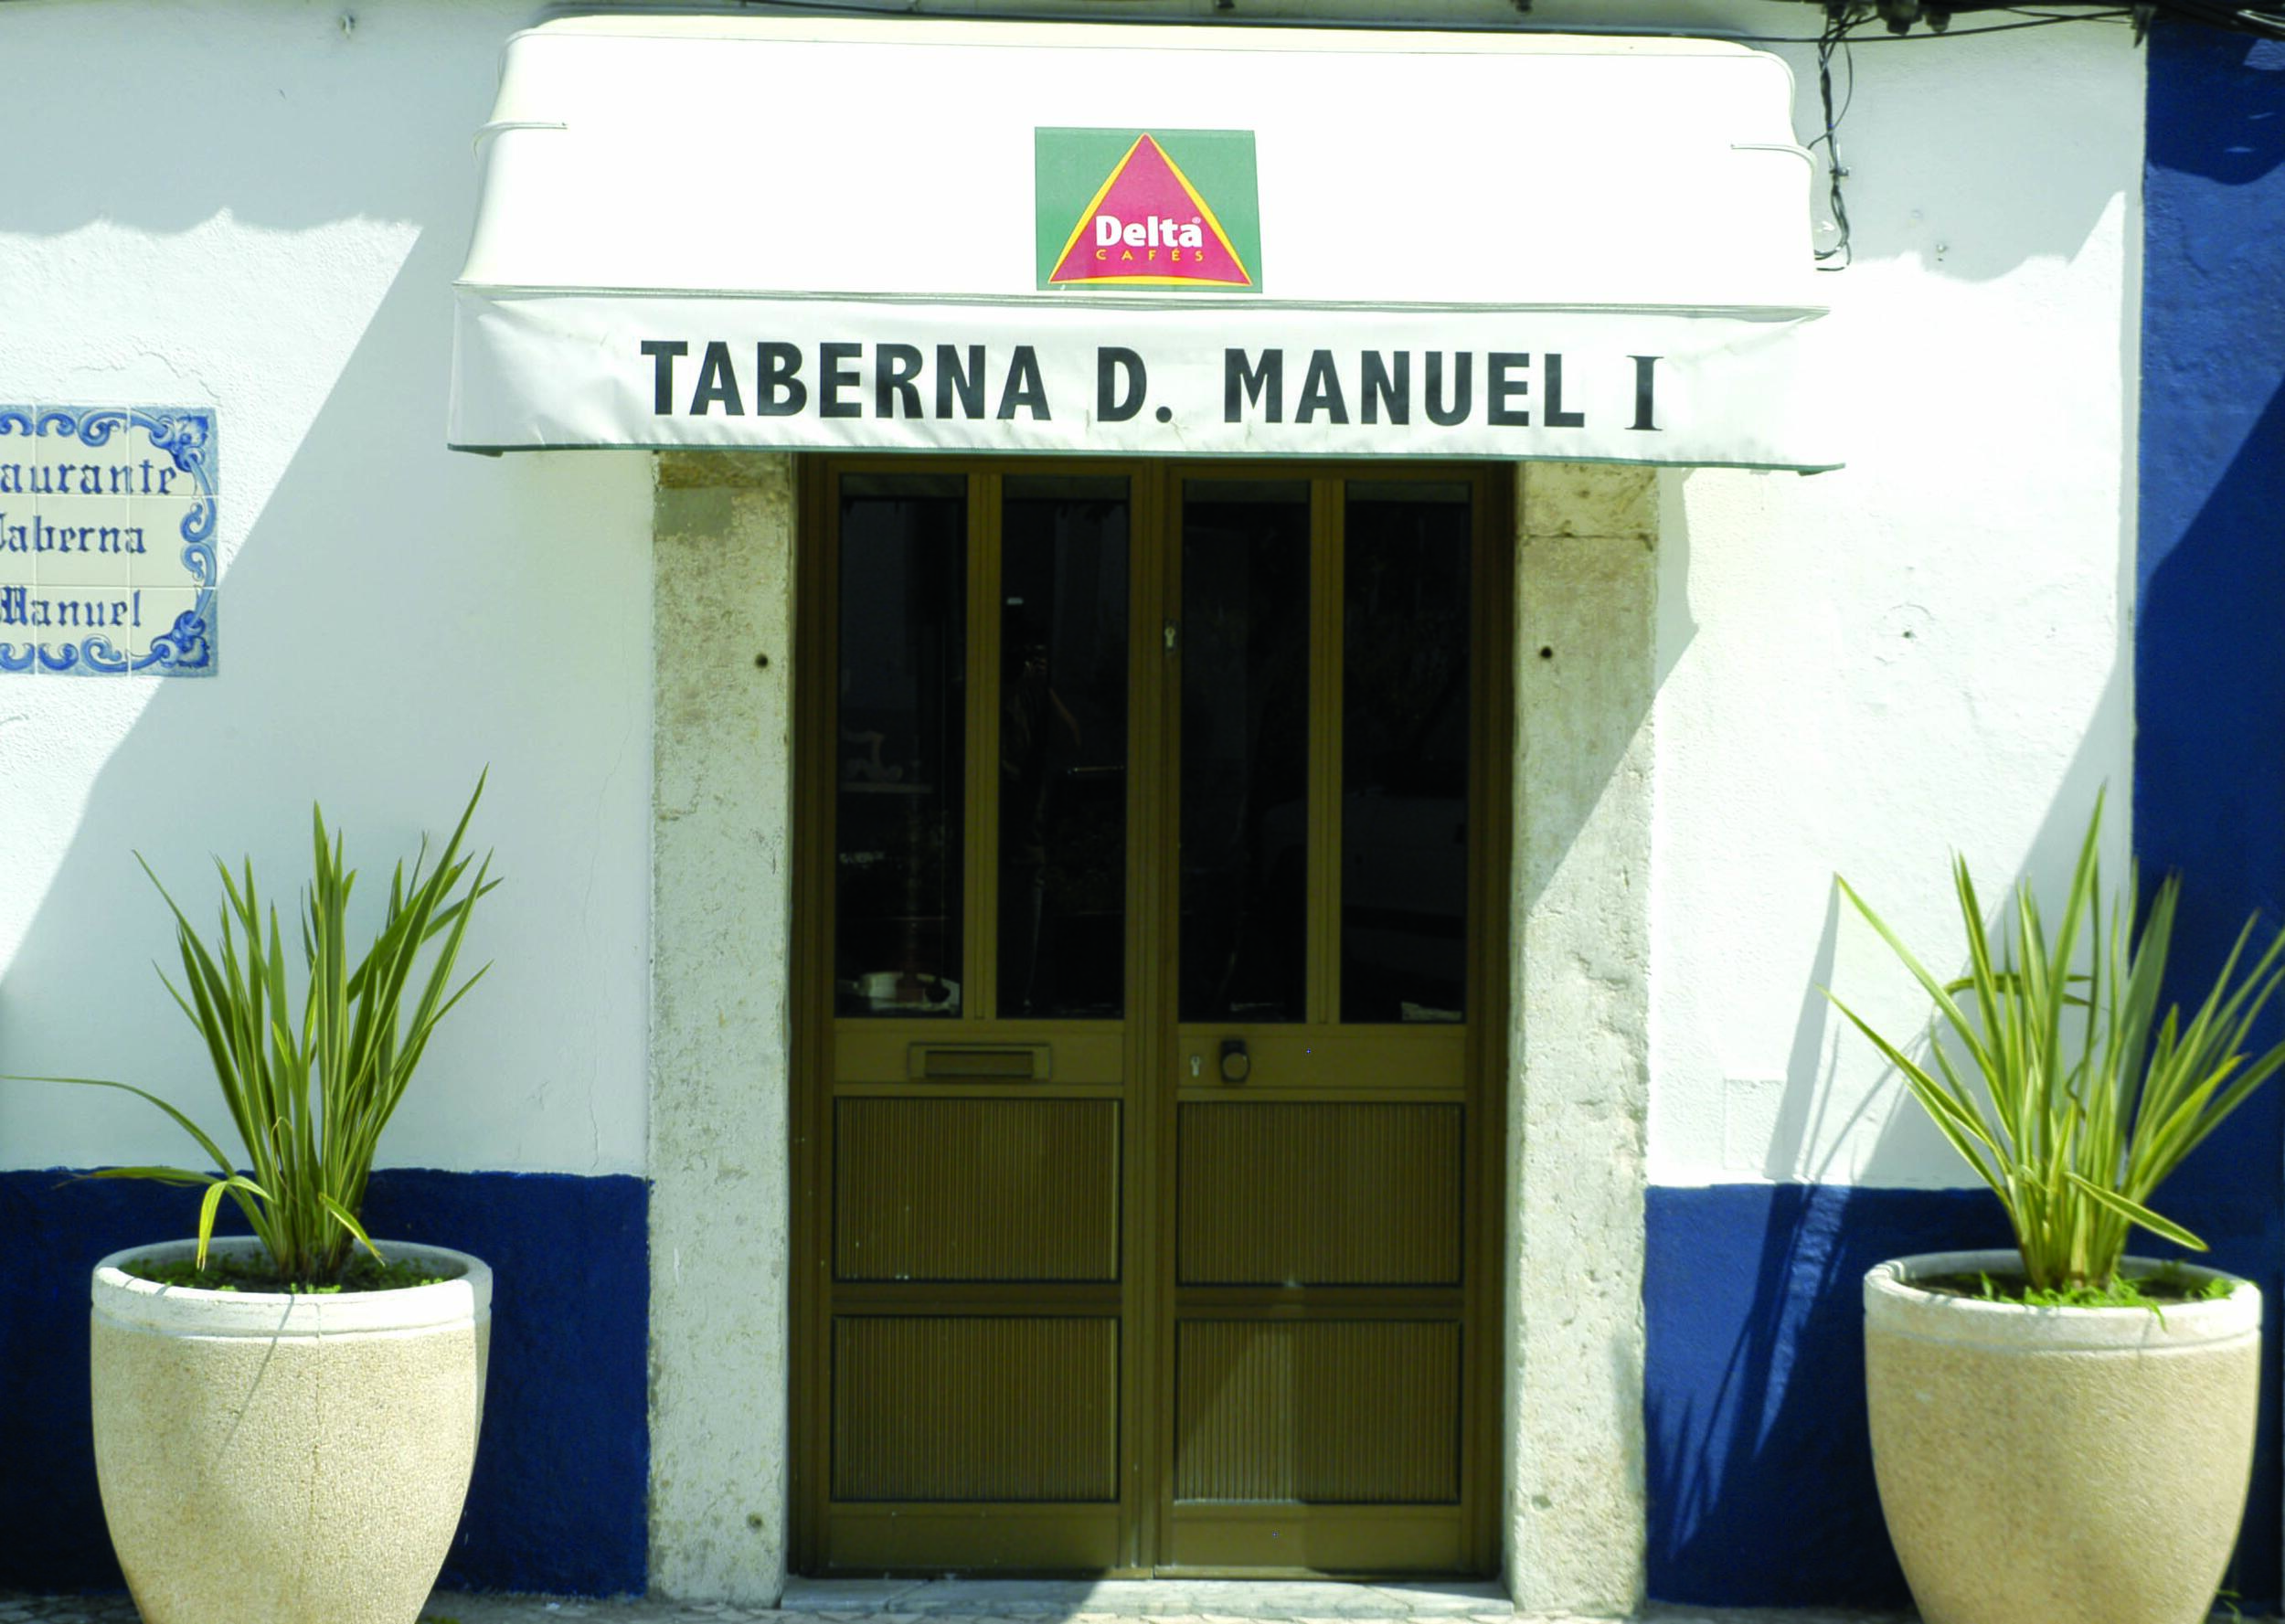 Taberna D. Manuel I